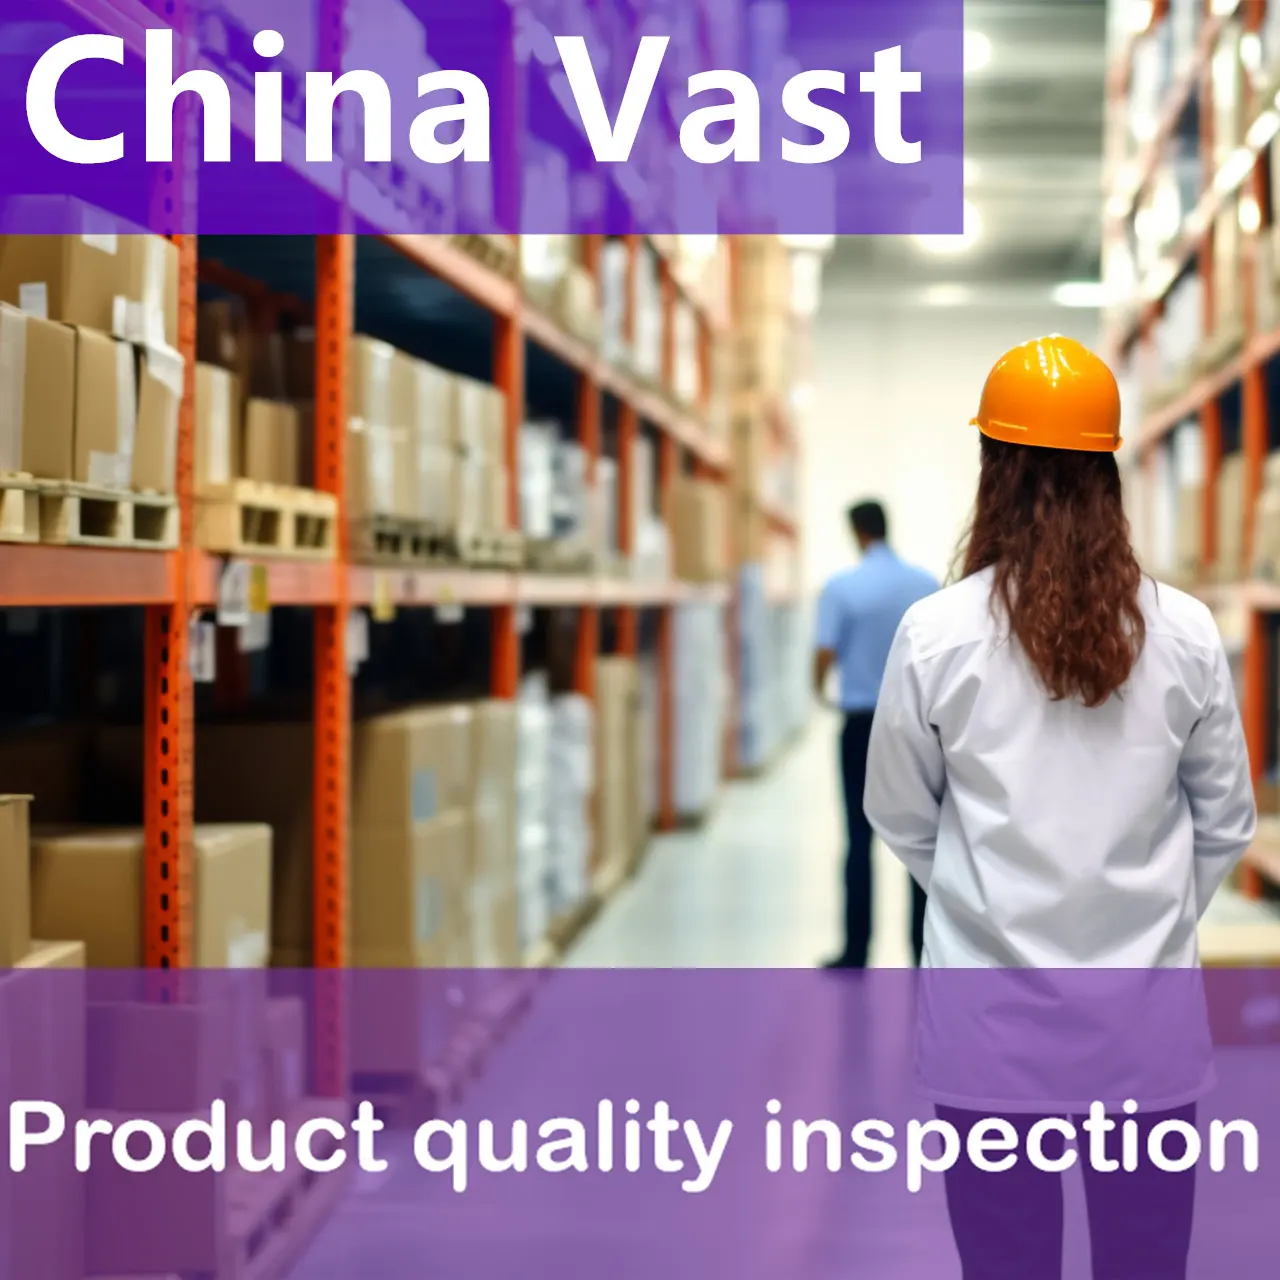 Les agences d'inspection tierces peuvent vous aider à vérifier l'authenticité de votre usine qui est professionnelle et expérimentée